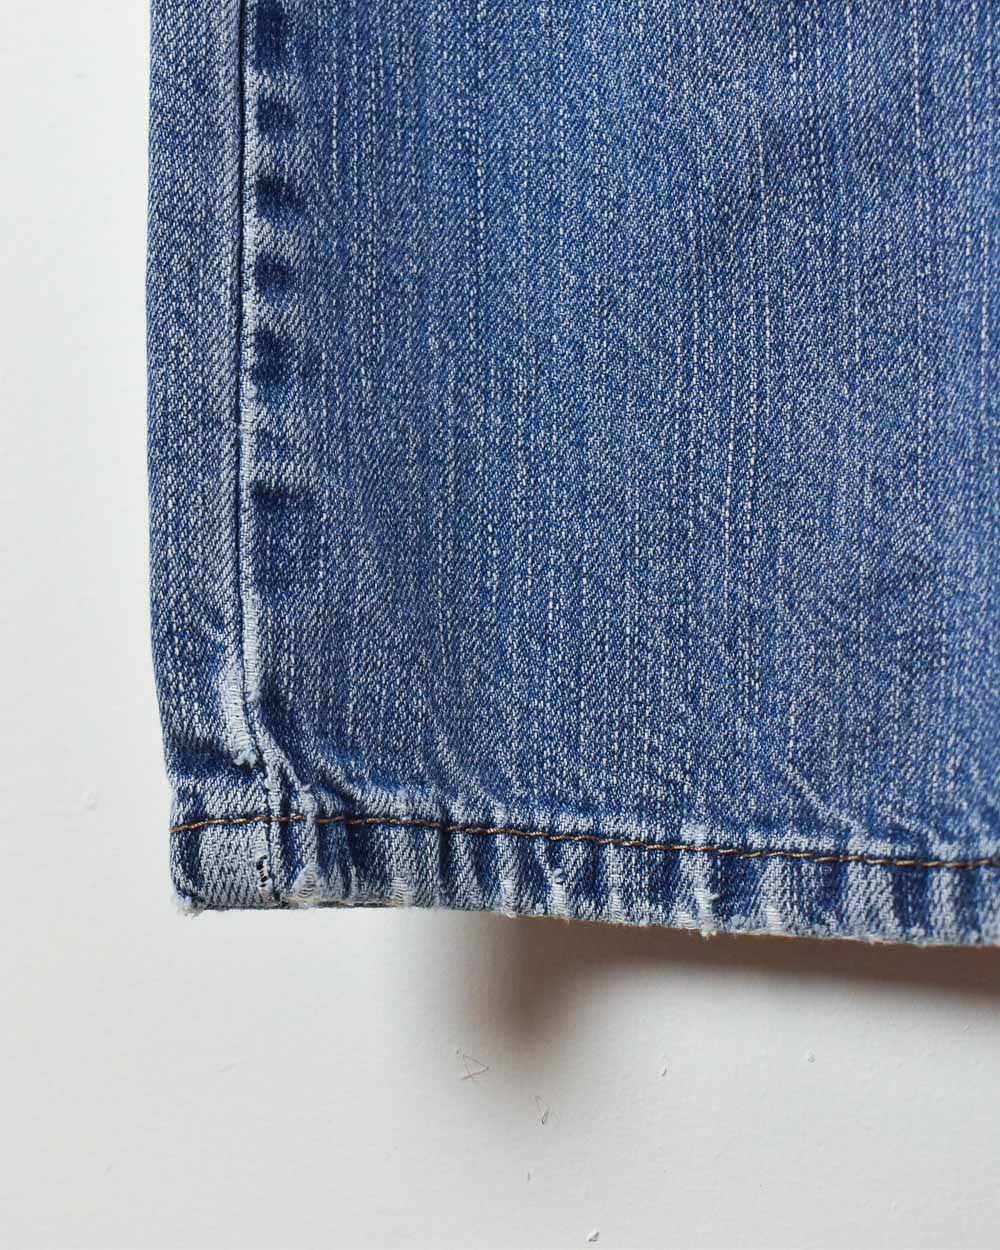 Blue Levi's 501 Jeans - W36 L31